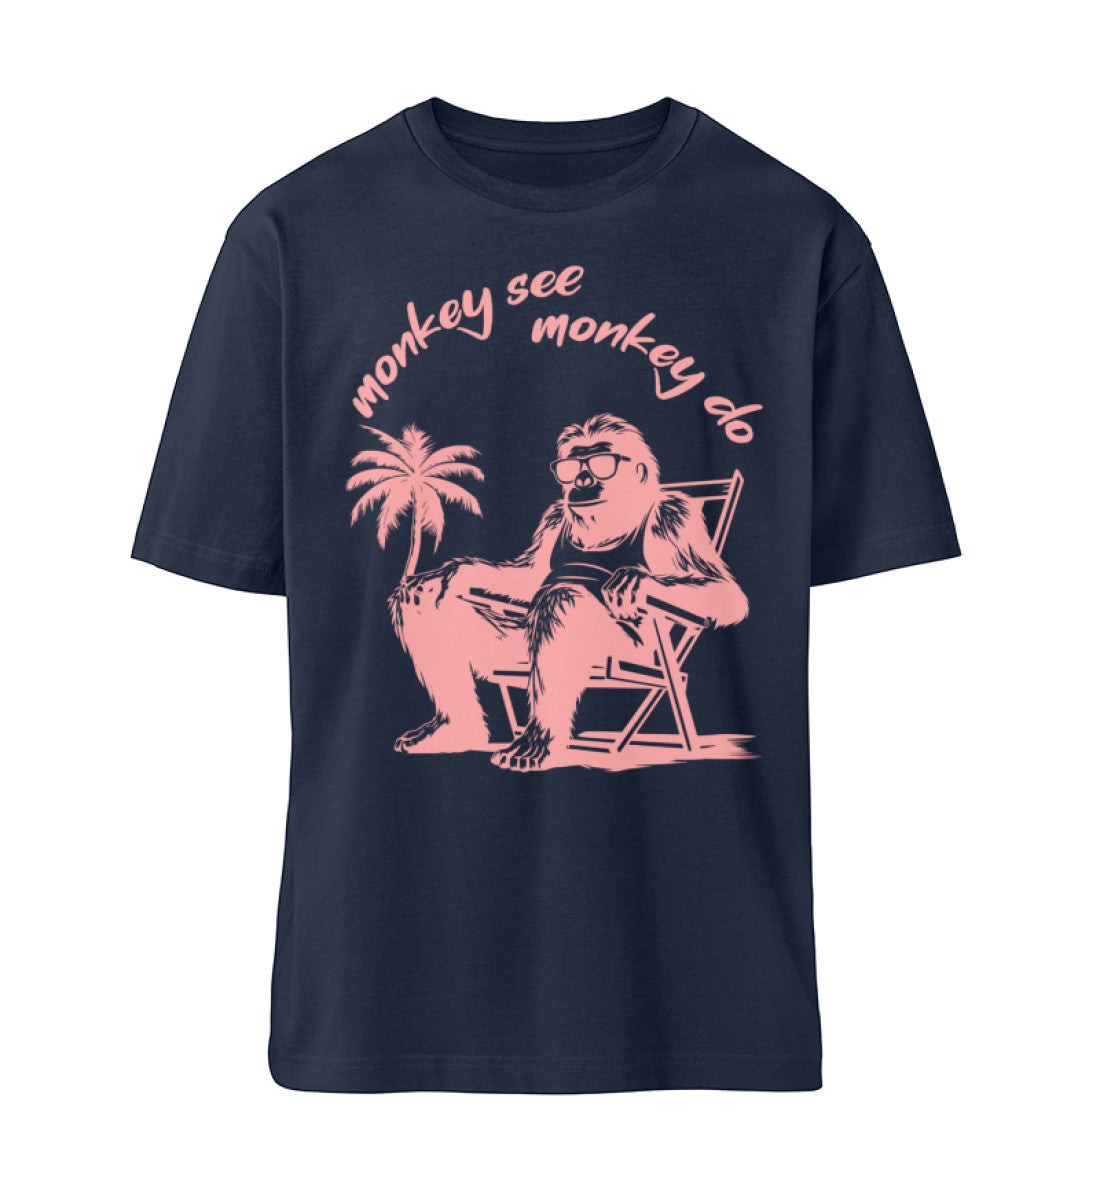 French Navy Blue T-Shirt Unisex Relaxed Fit für Frauen und Männer bedruckt mit dem Design der Roger Rockawoo Clothing Kollektion monkey see monkey do